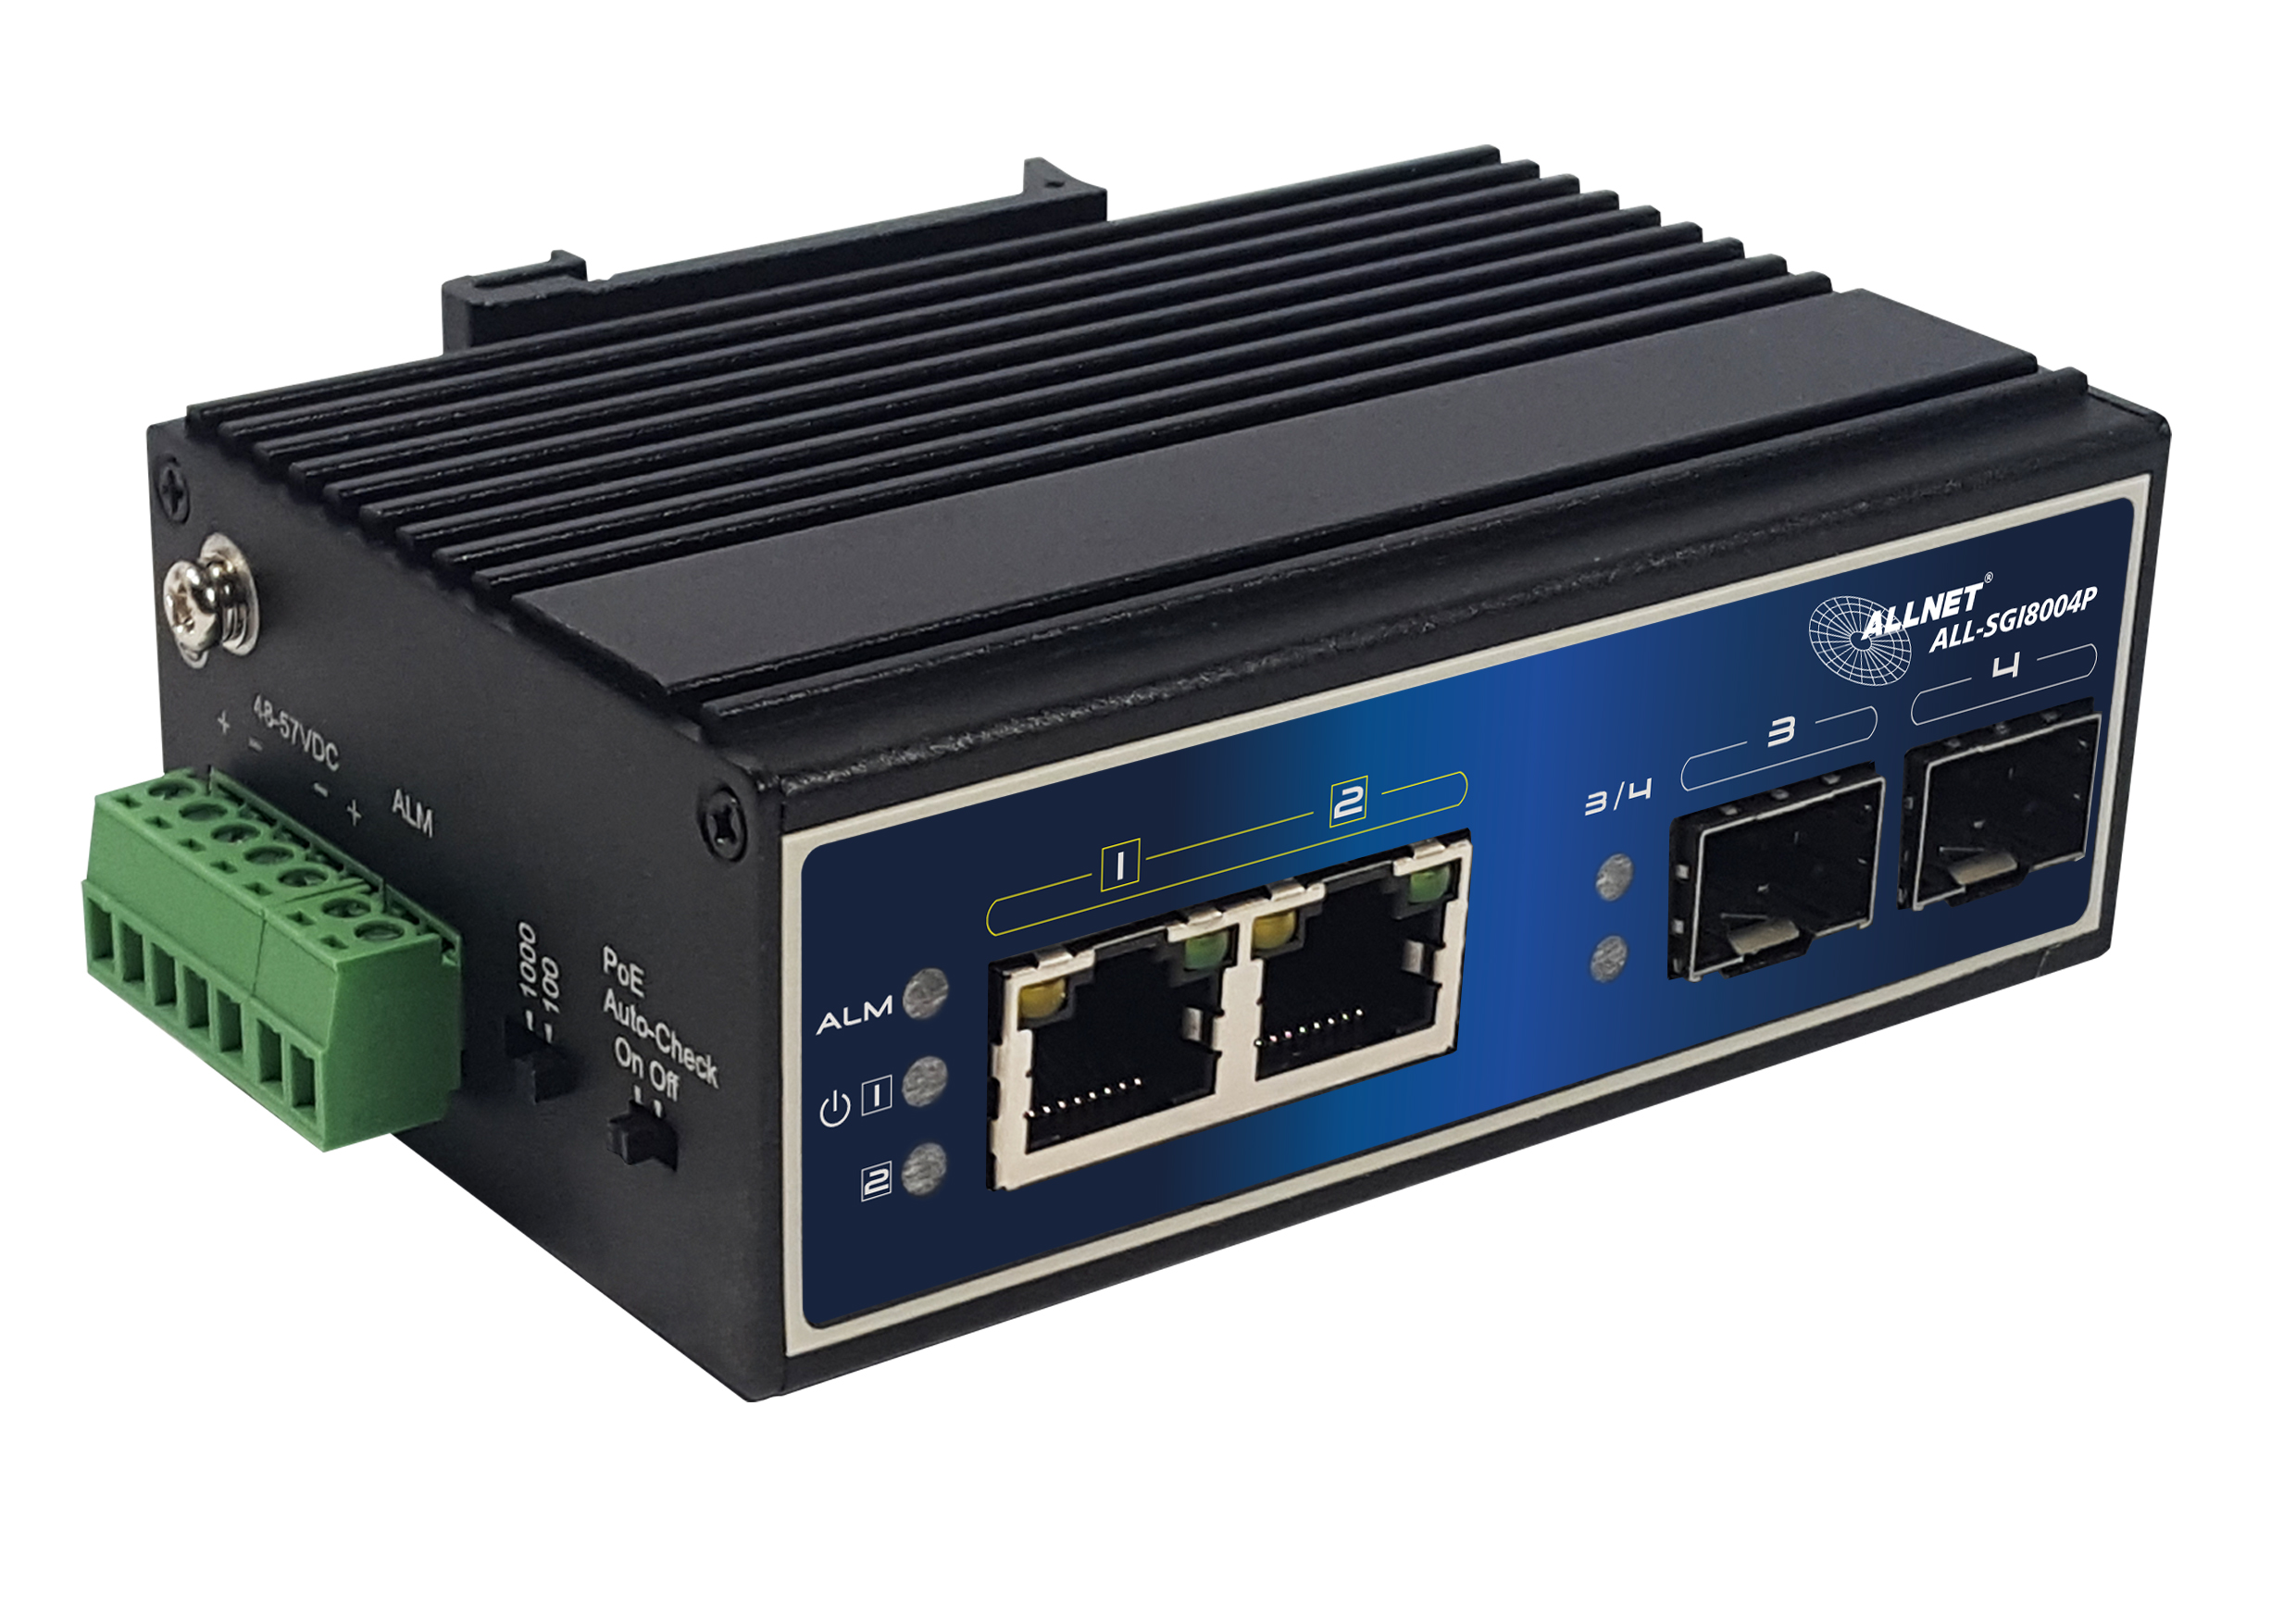 4 Port Gigabit 60W / 2x PoE + / 2x SFP / fanless / DIN / IP40 / “ALL-SGI8004P”